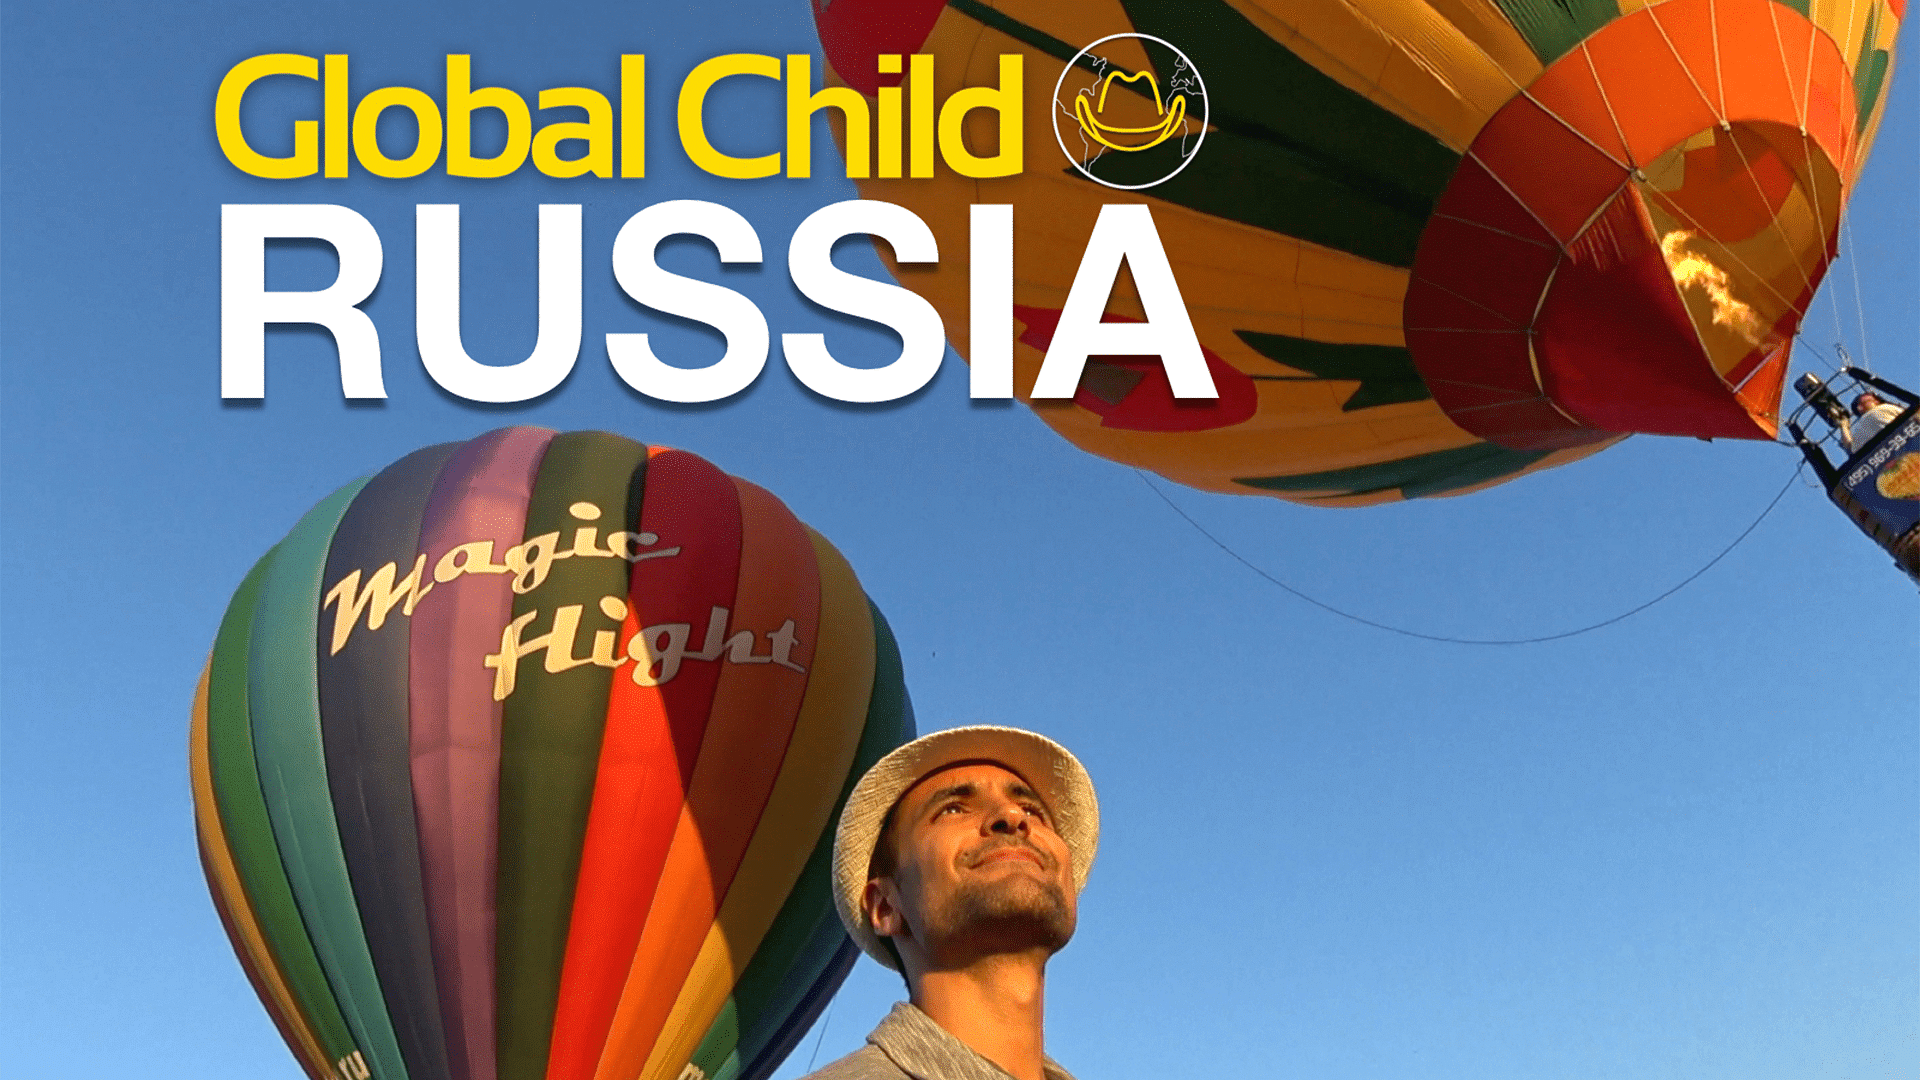 Global Child Rusia "El reto de soñar"